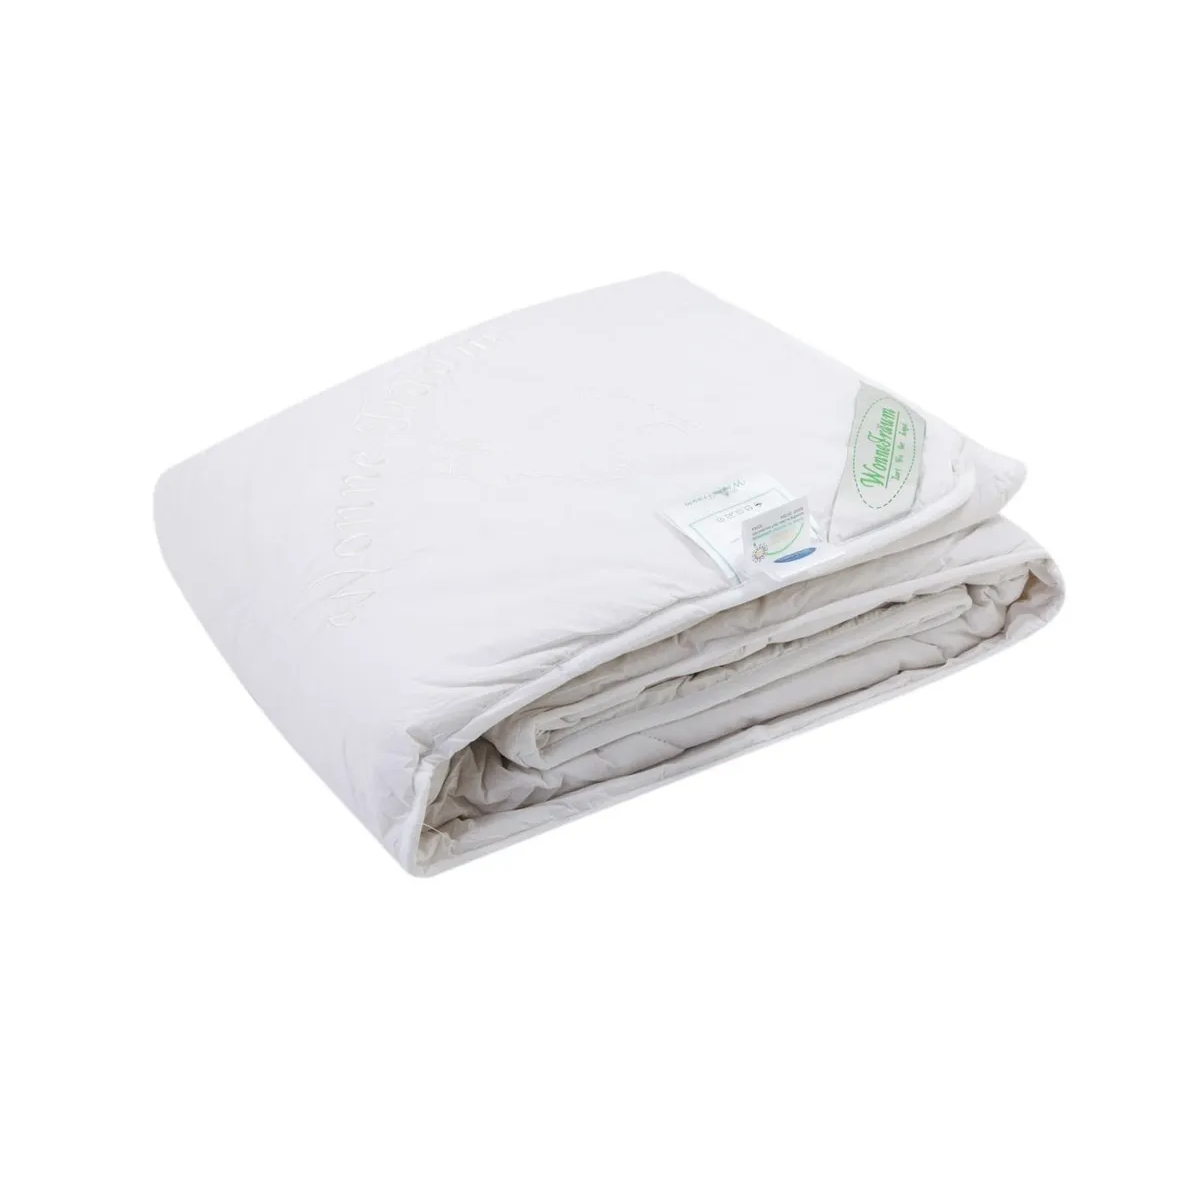 Одеяло шерстяное Wonne Traum белое 200х220 см (2709-26241) одеяло кашемировое wonne traum белое 150х210 см 2709 136711